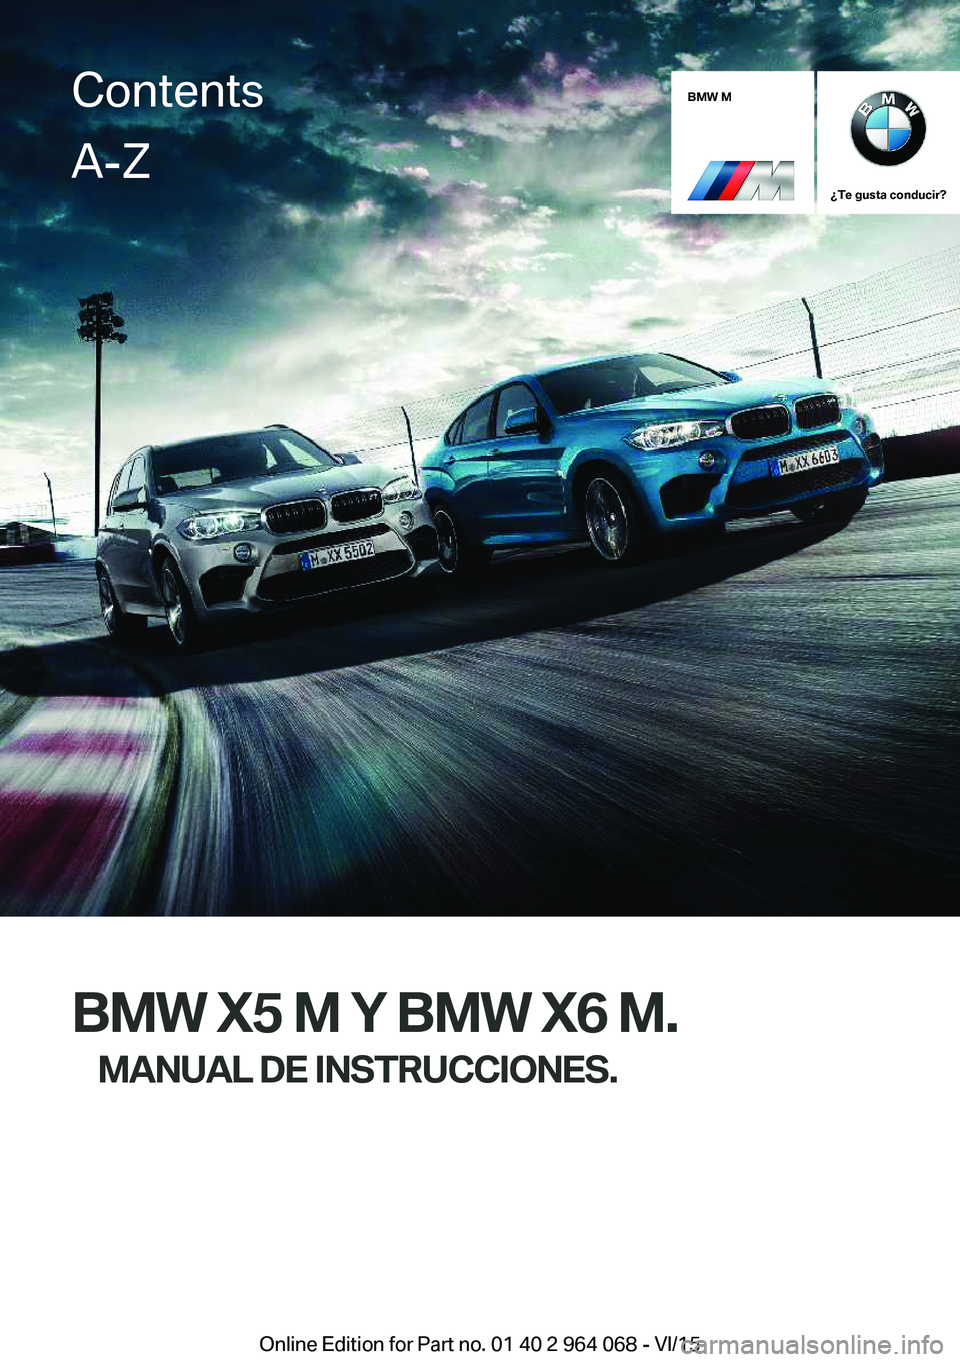 BMW X6 M 2016  Manuales de Empleo (in Spanish) BMW M
¿Te gusta conducir?
BMW X5 M Y BMW X6 M.MANUAL DE INSTRUCCIONES.
ContentsA-Z
Online Edition for Part no. 01 40 2 964 068 - VI/15   